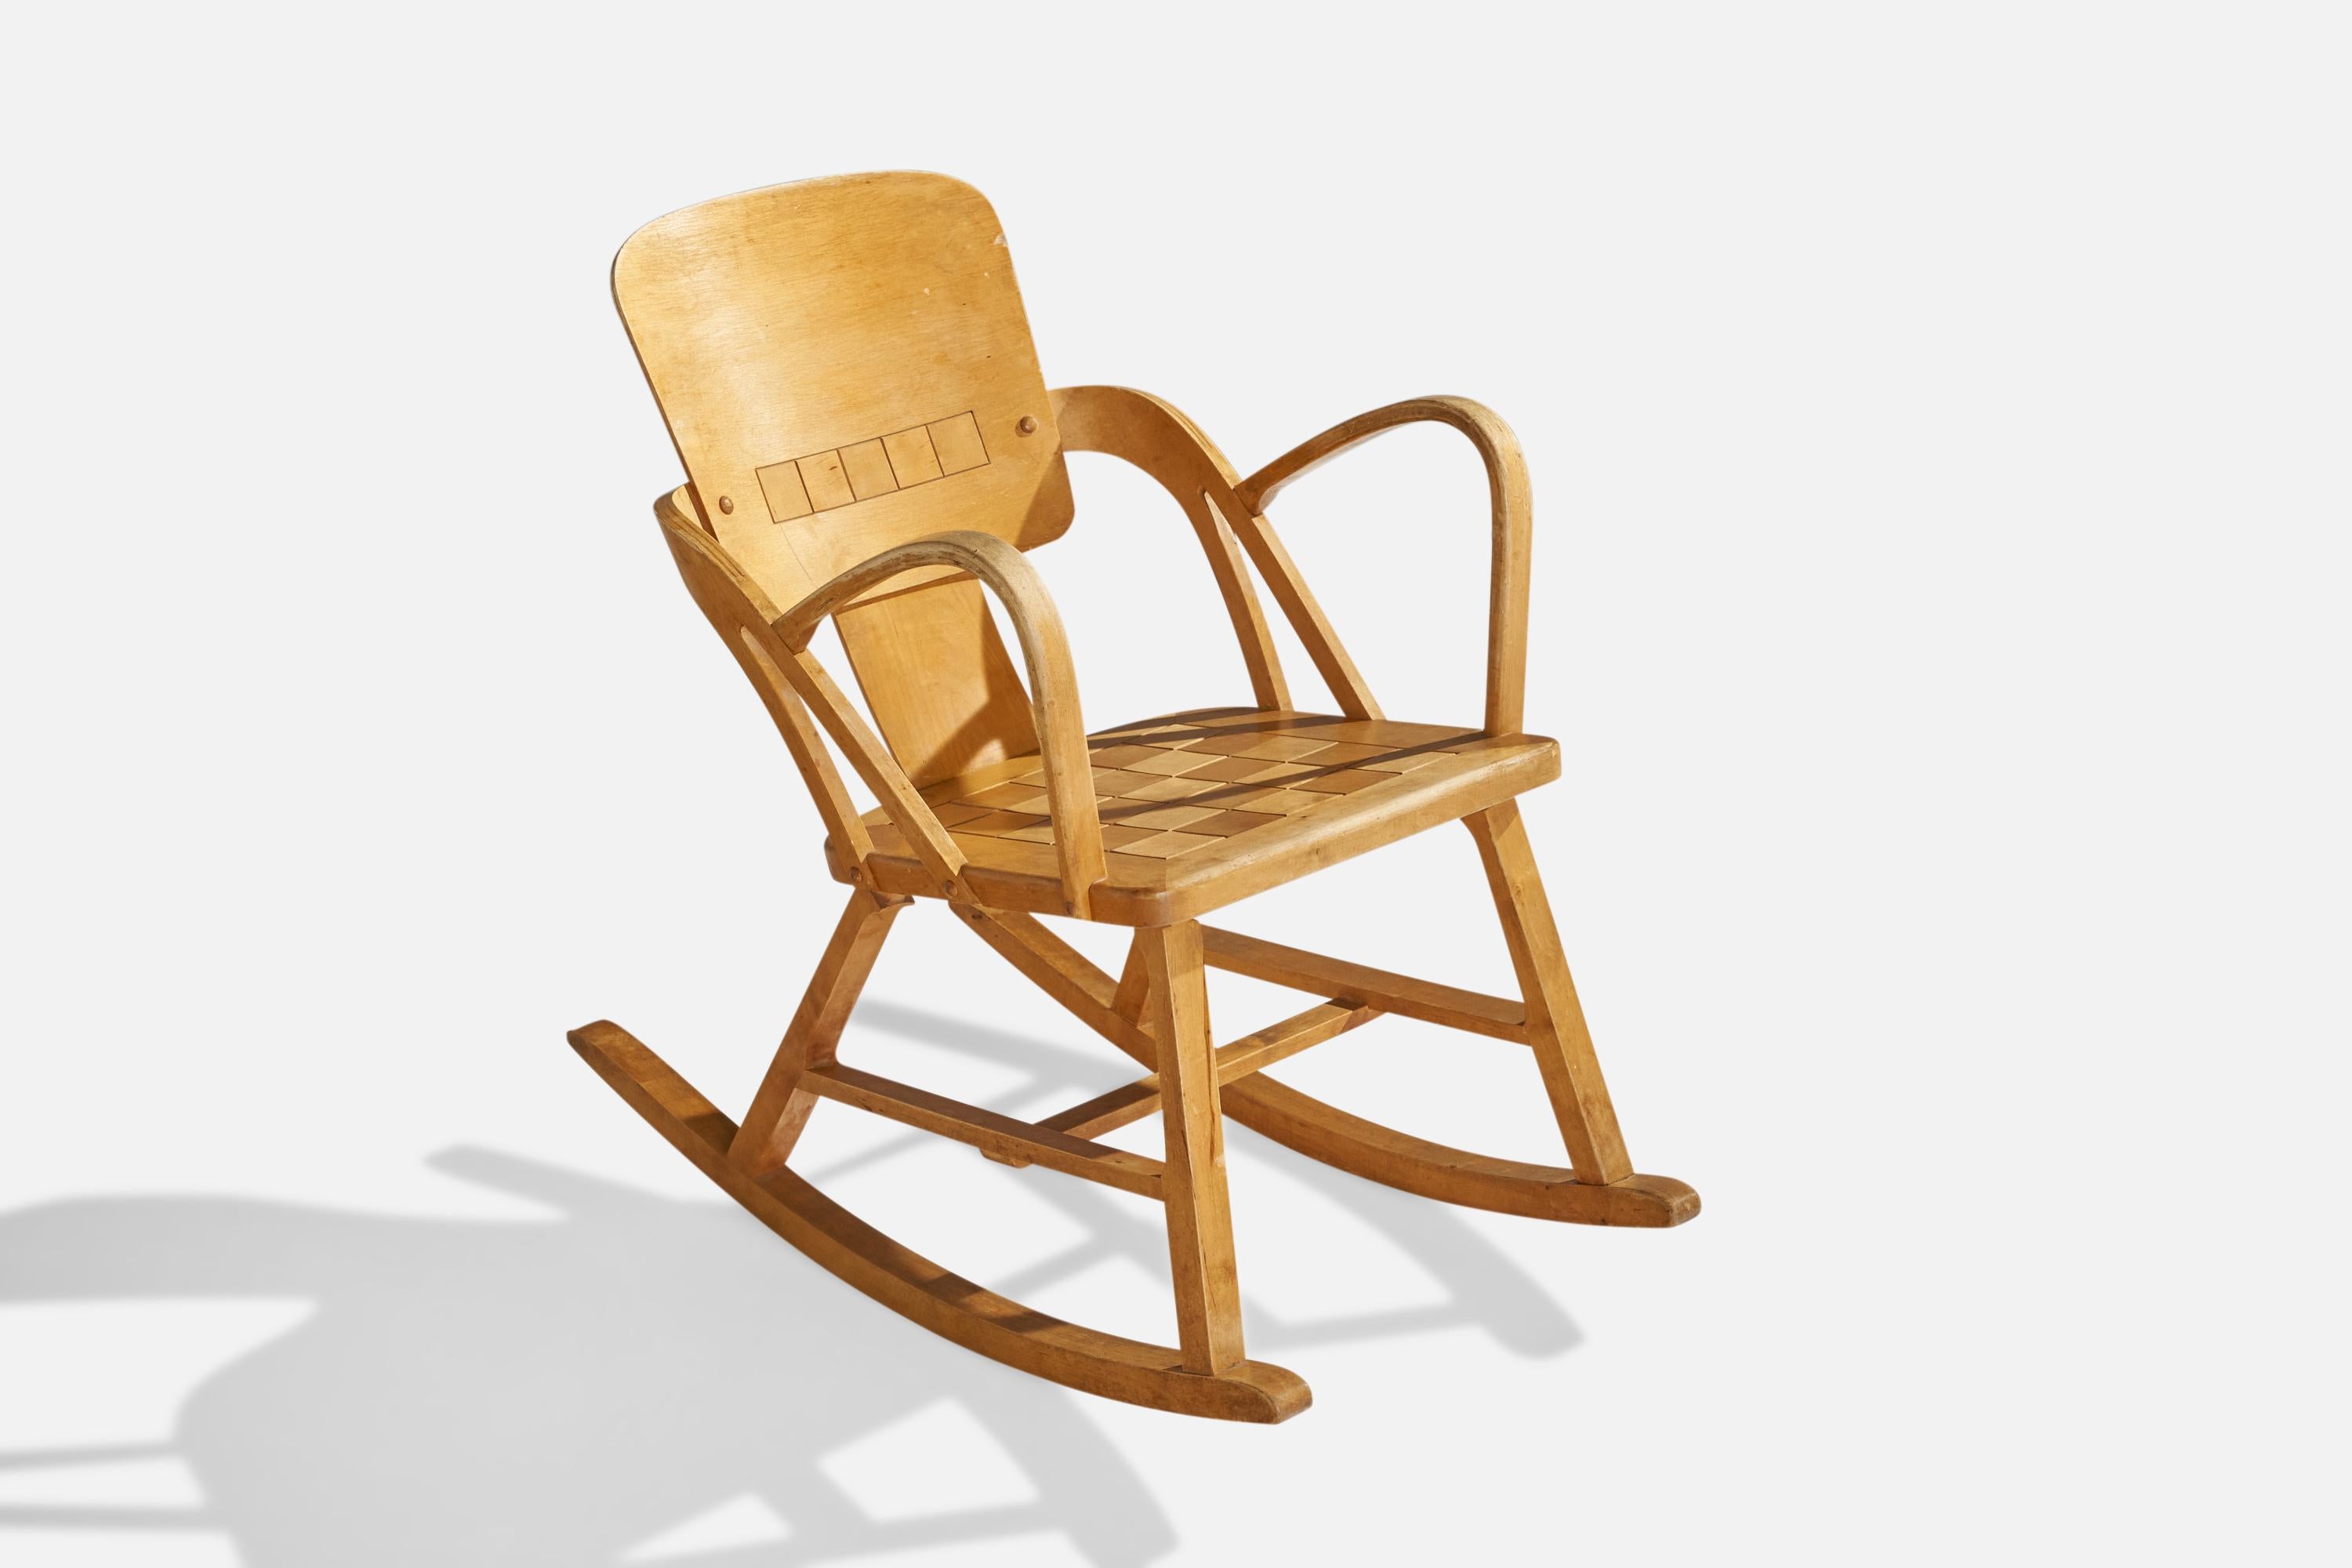 Ein Schaukelstuhl aus Birke, entworfen von Per Aaslid und hergestellt von Aaslid Møbelfabrikk, Fyrde, Volda, Norwegen, um 1950.

Sitzhöhe: 16.5